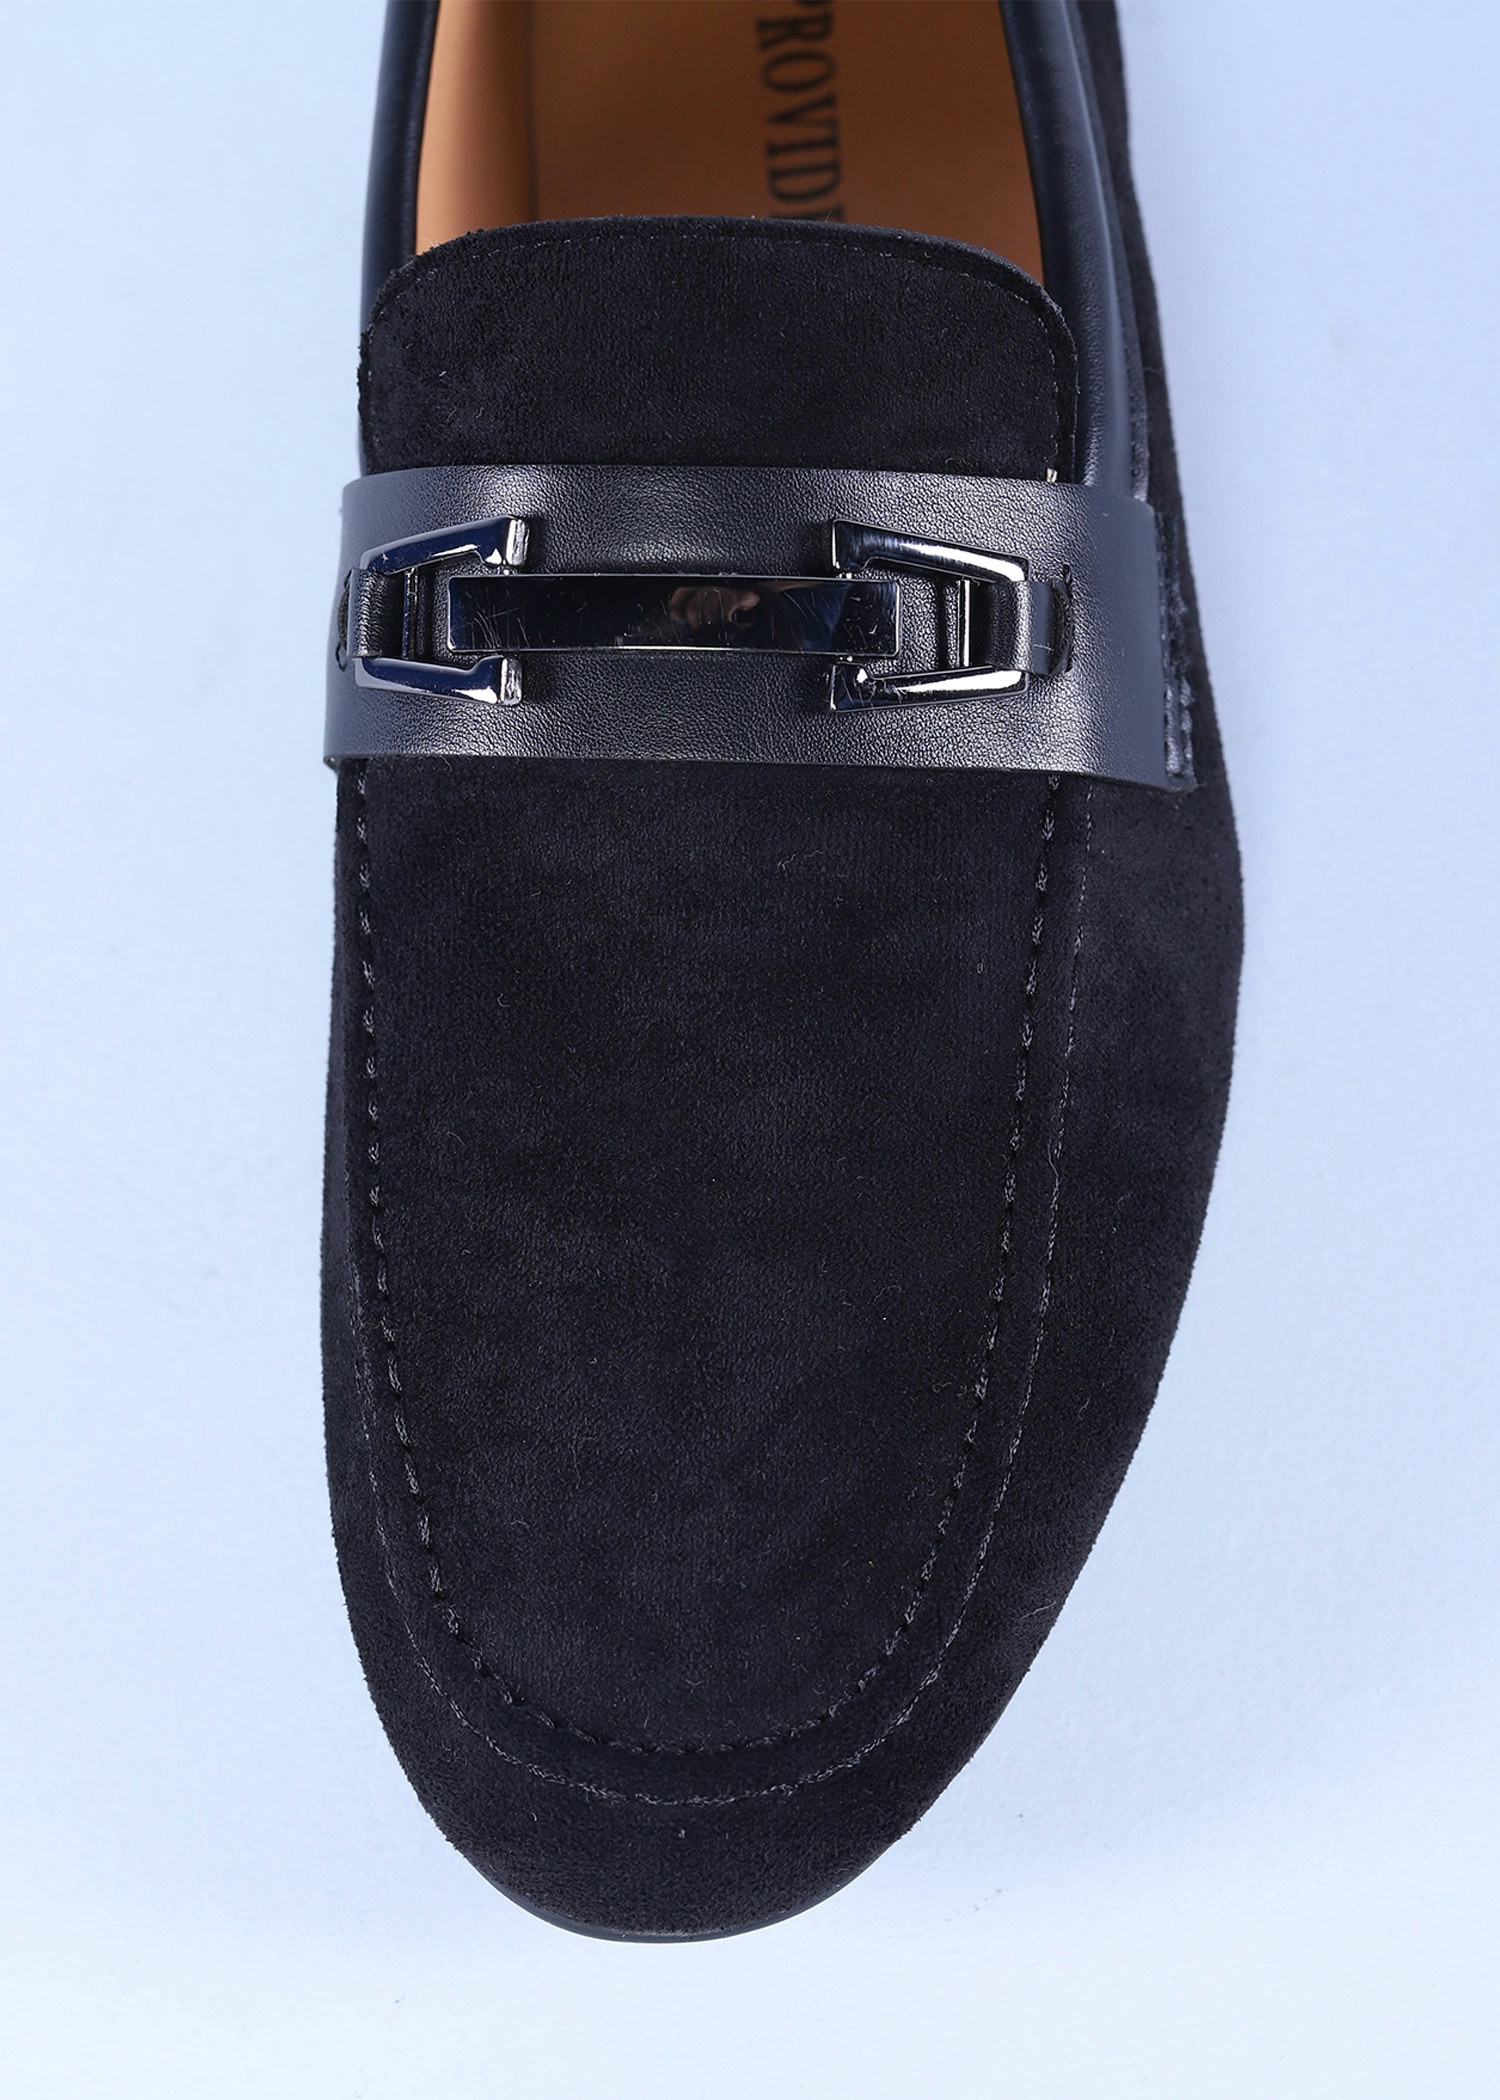 tagus mens shoes black color top close